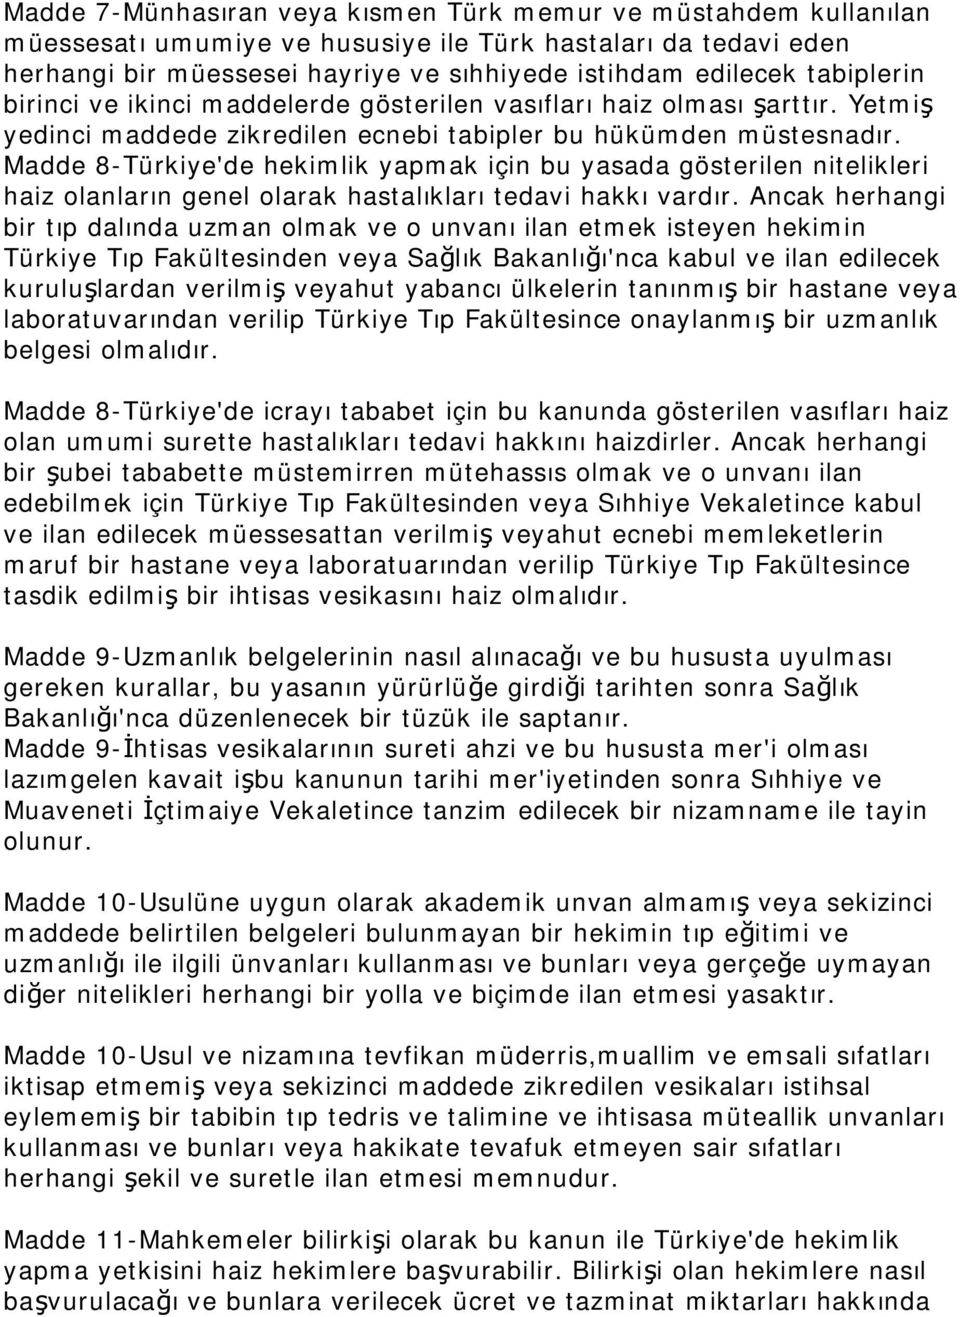 Madde 8-Türkiye'de hekimlik yapmak için bu yasada gösterilen nitelikleri haiz olanların genel olarak hastalıkları tedavi hakkı vardır.